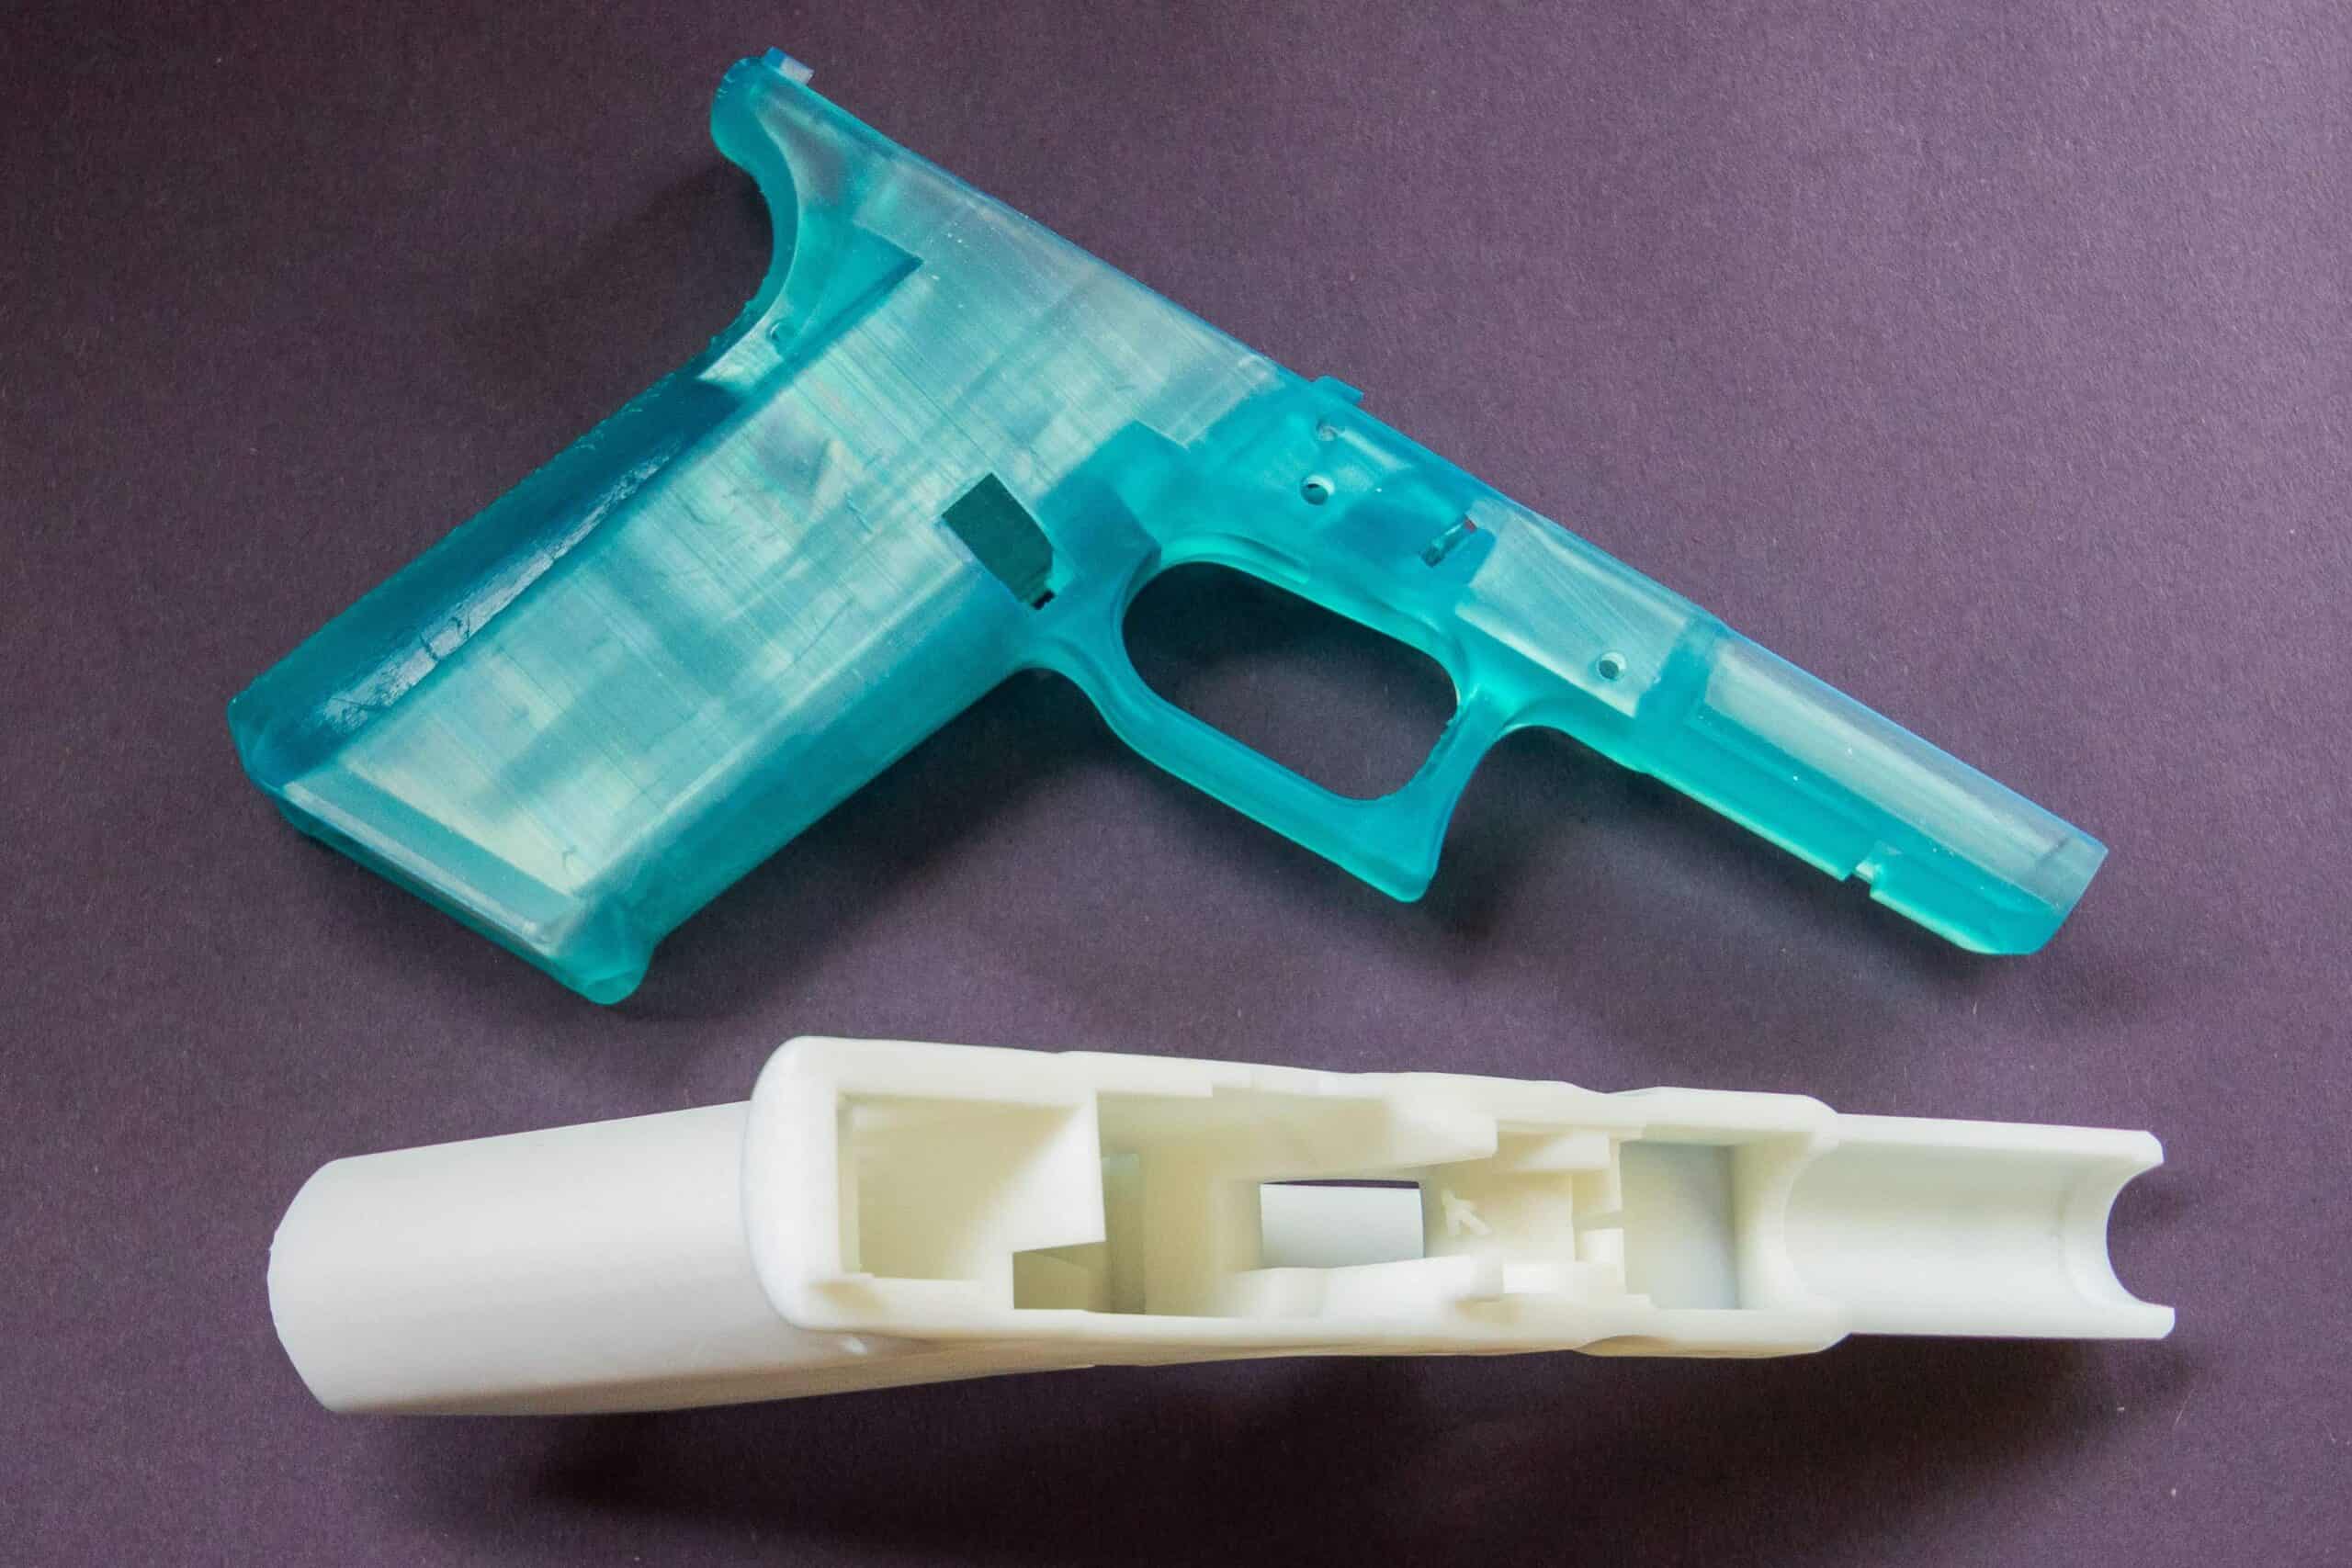 3d printed ghost gun